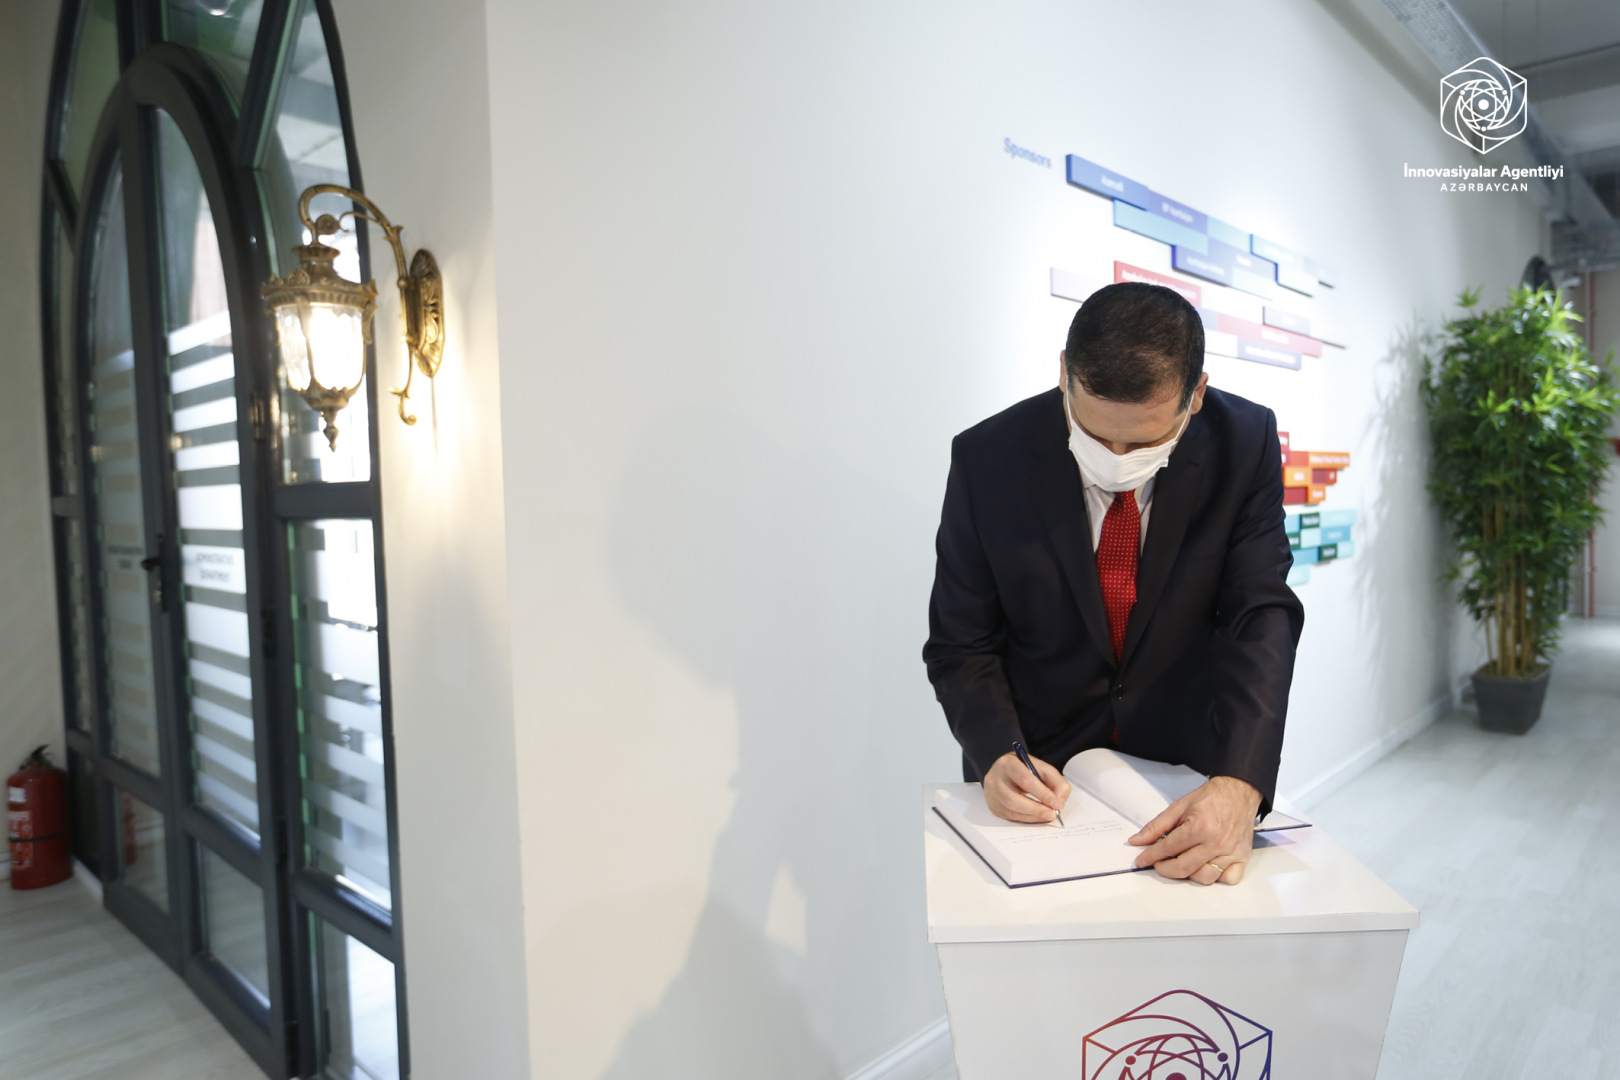 Турецкий венчурный фонд открыл представительство в Азербайджане (ФОТО)